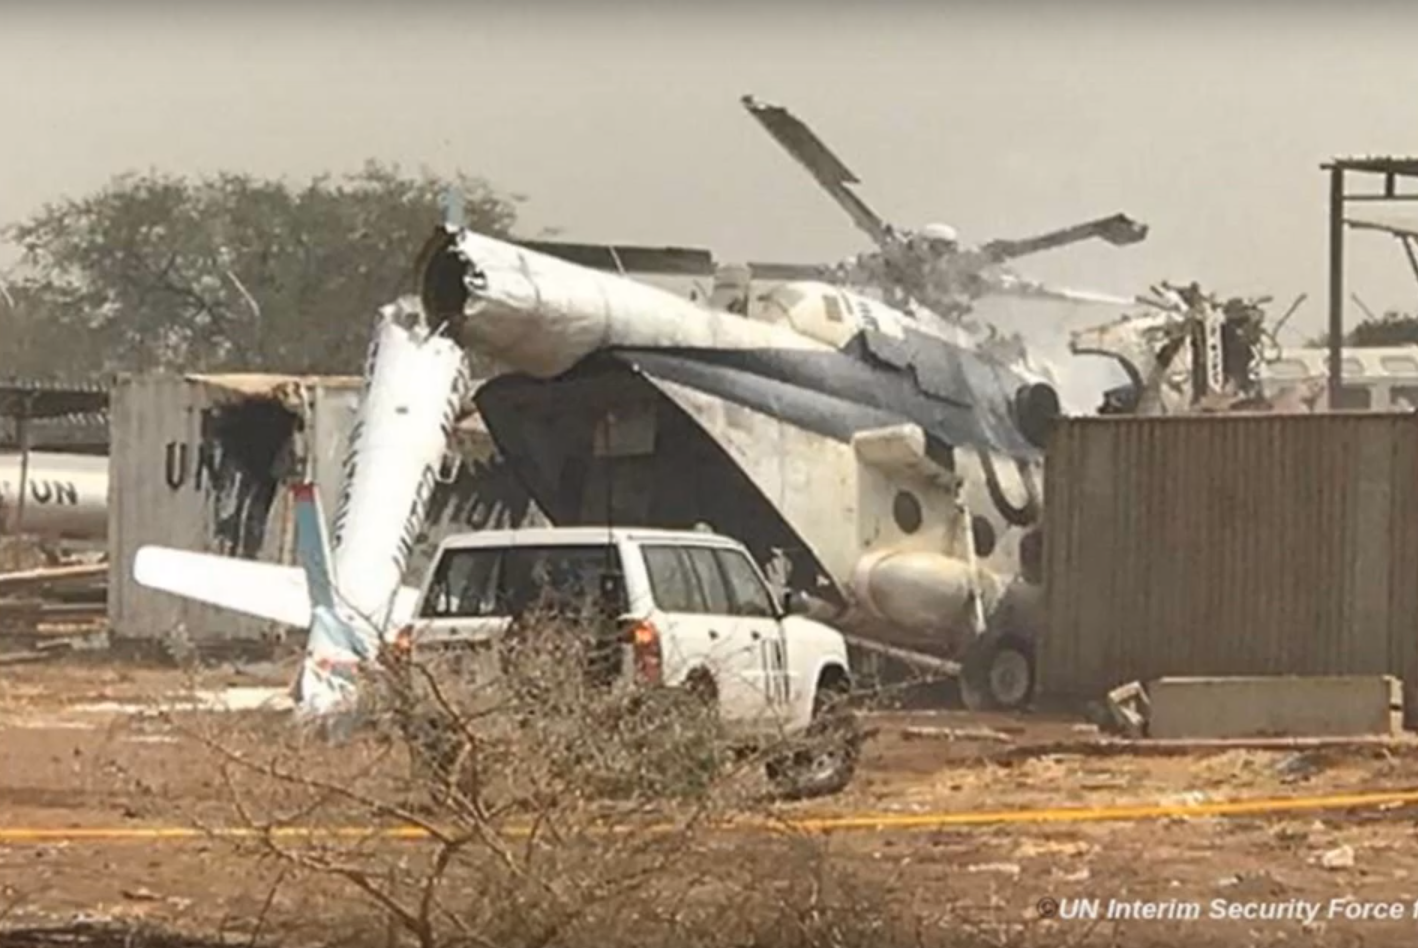 L'hélicoptère transportait 23 passagers au moment du crash survenu samedi dans l'enceinte de la Force de sécurité intérimaire des Nations Unies pour Abiyé.